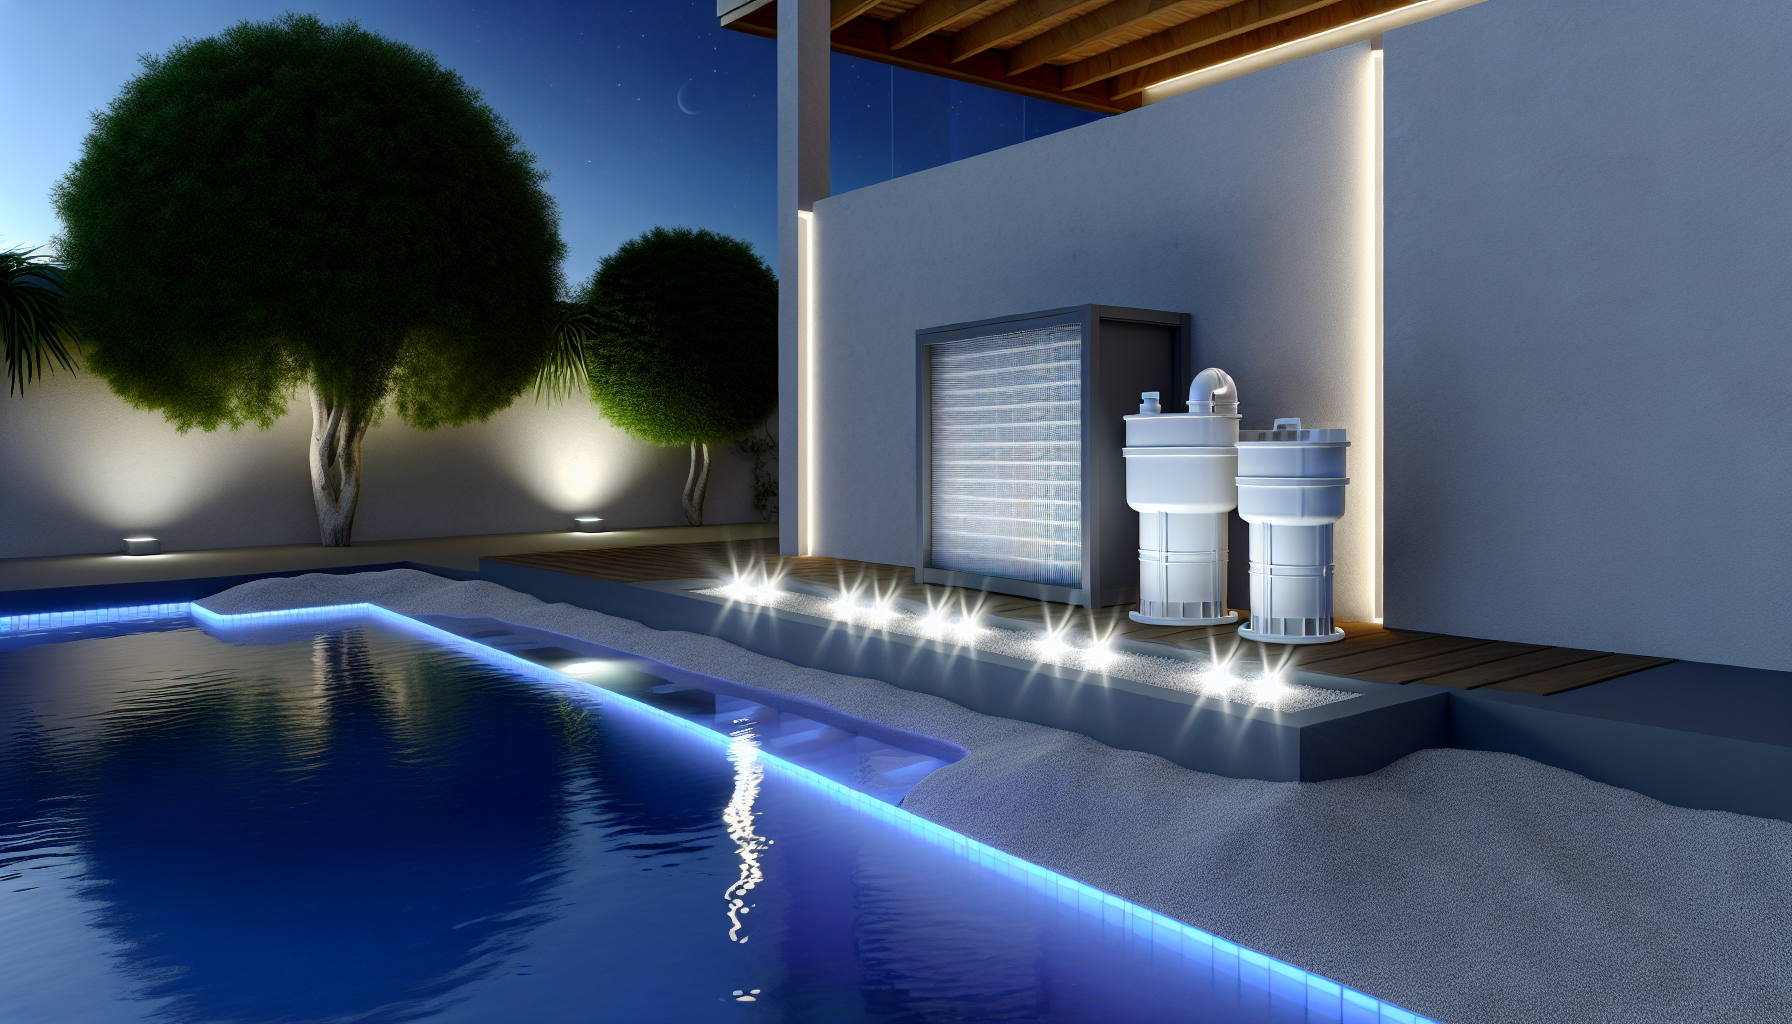 Ein modernes Pool-Design bei Nacht mit stimmungsvoller Beleuchtung und angrenzender Terrasse.